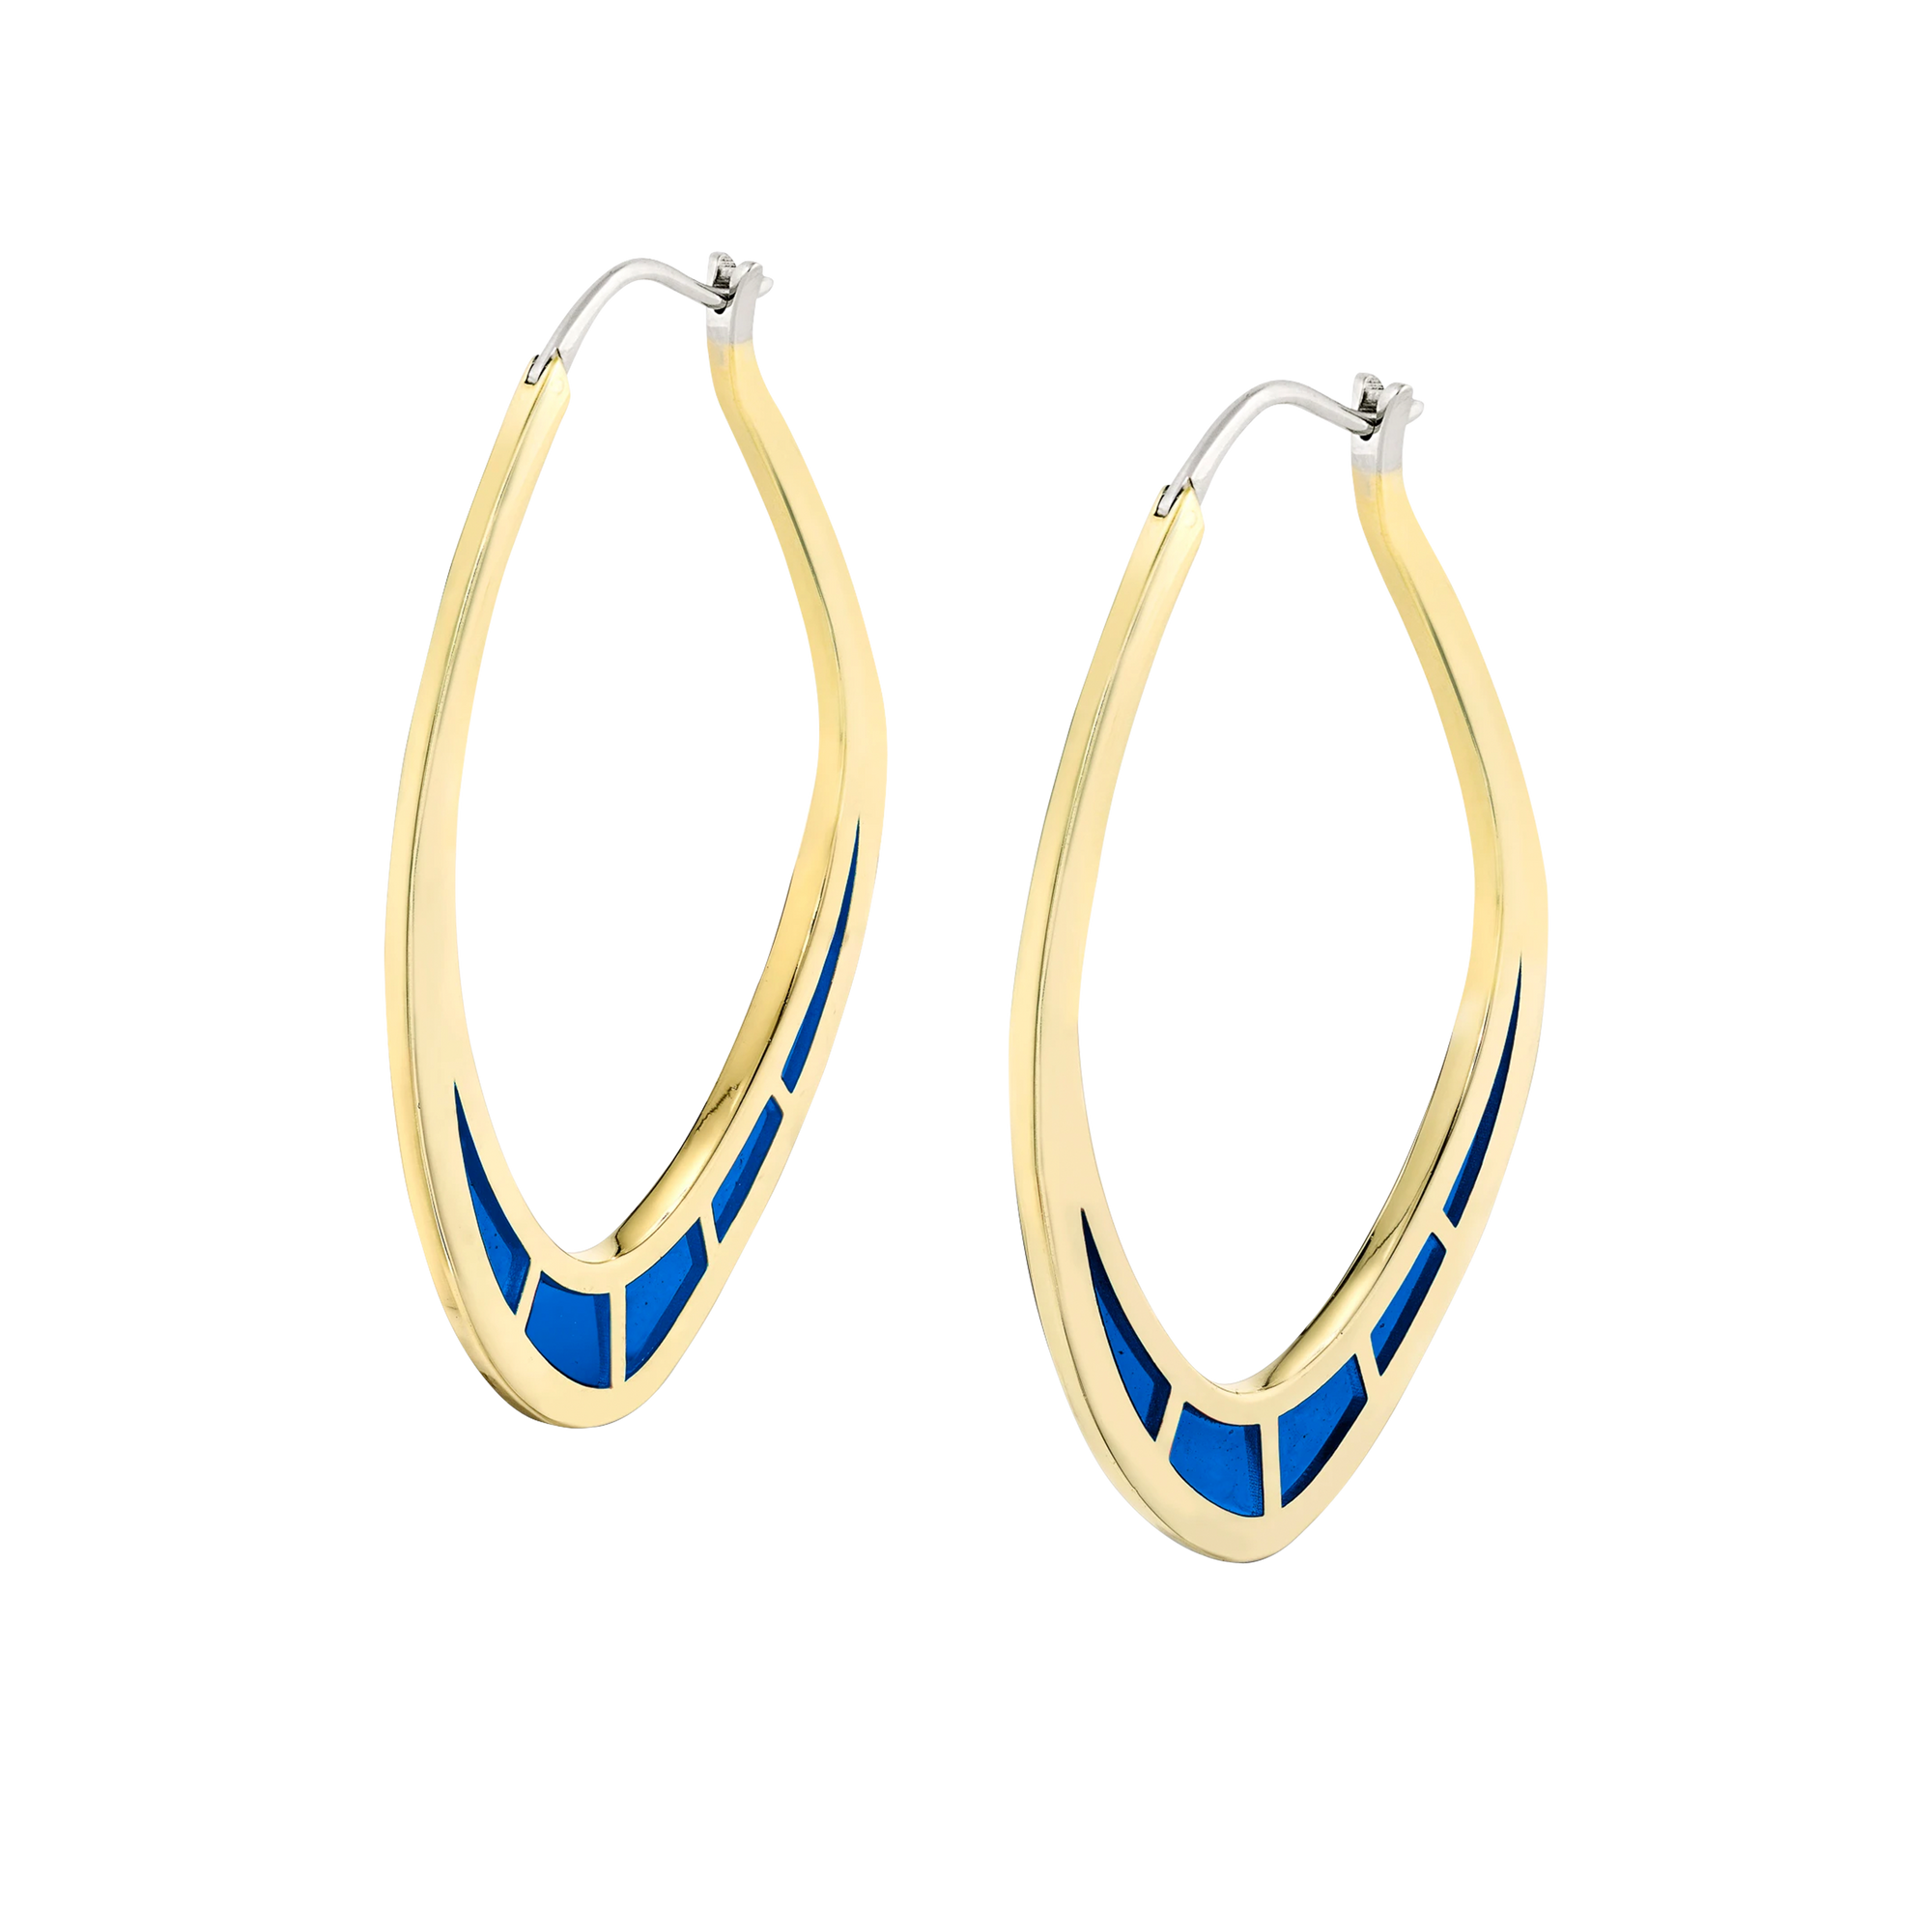 Cica Earrings with Blue Enamel